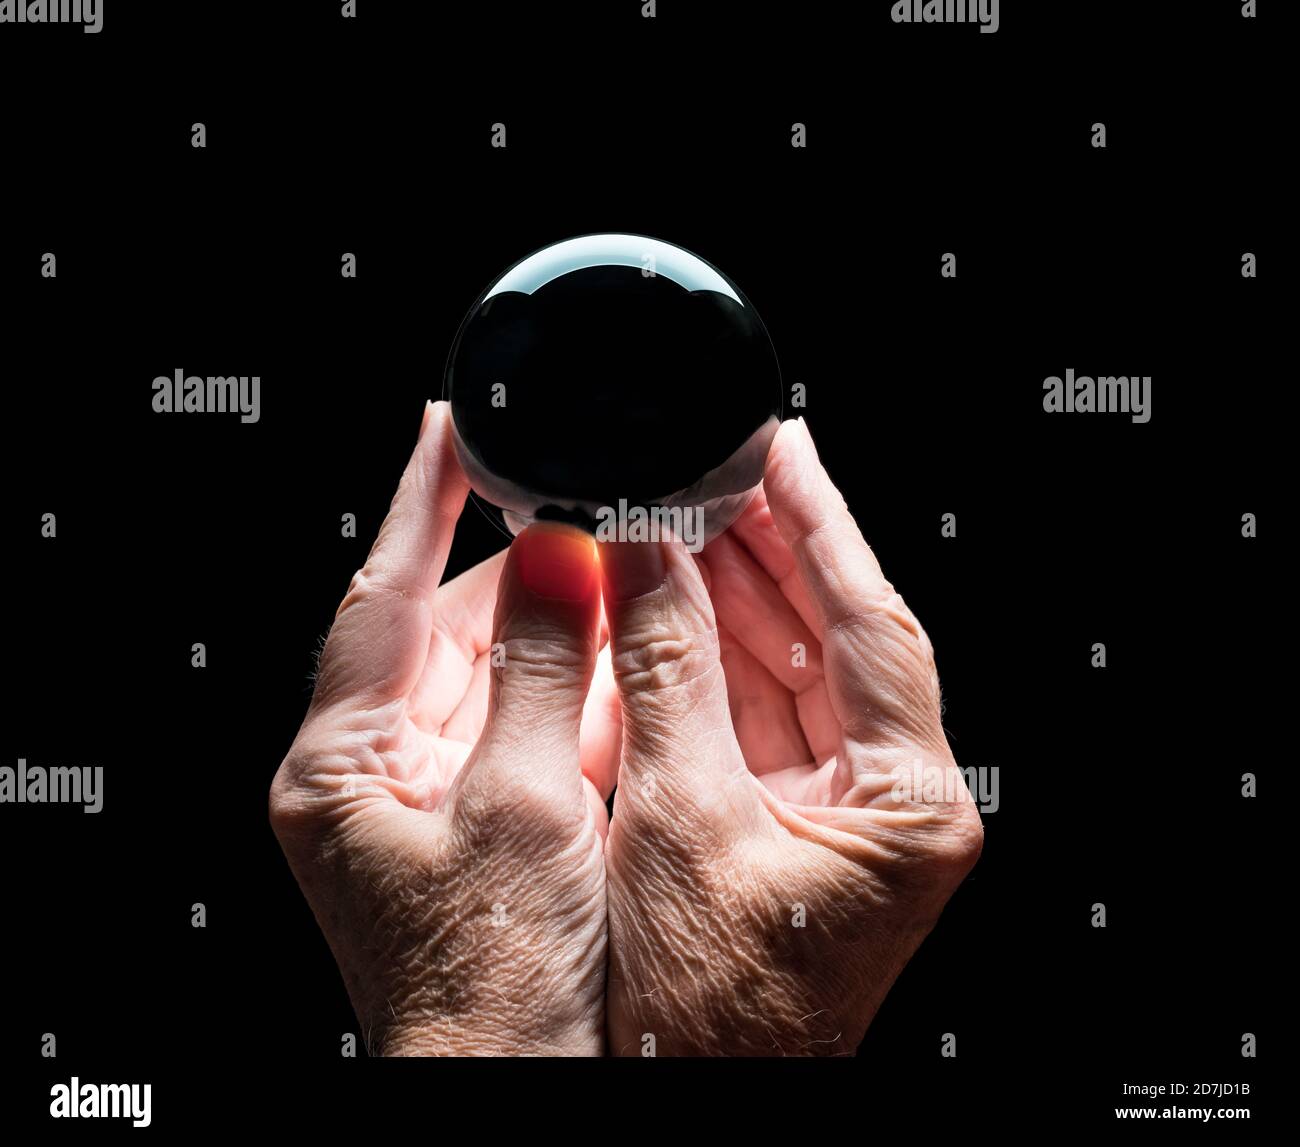 Ältere kaukasische Hände halten eine Kristallzukunft oder Wahrsagerei Ball mit schwarzer Mitte, um das Compositing Ihres Logos zu ermöglichen Stockfoto